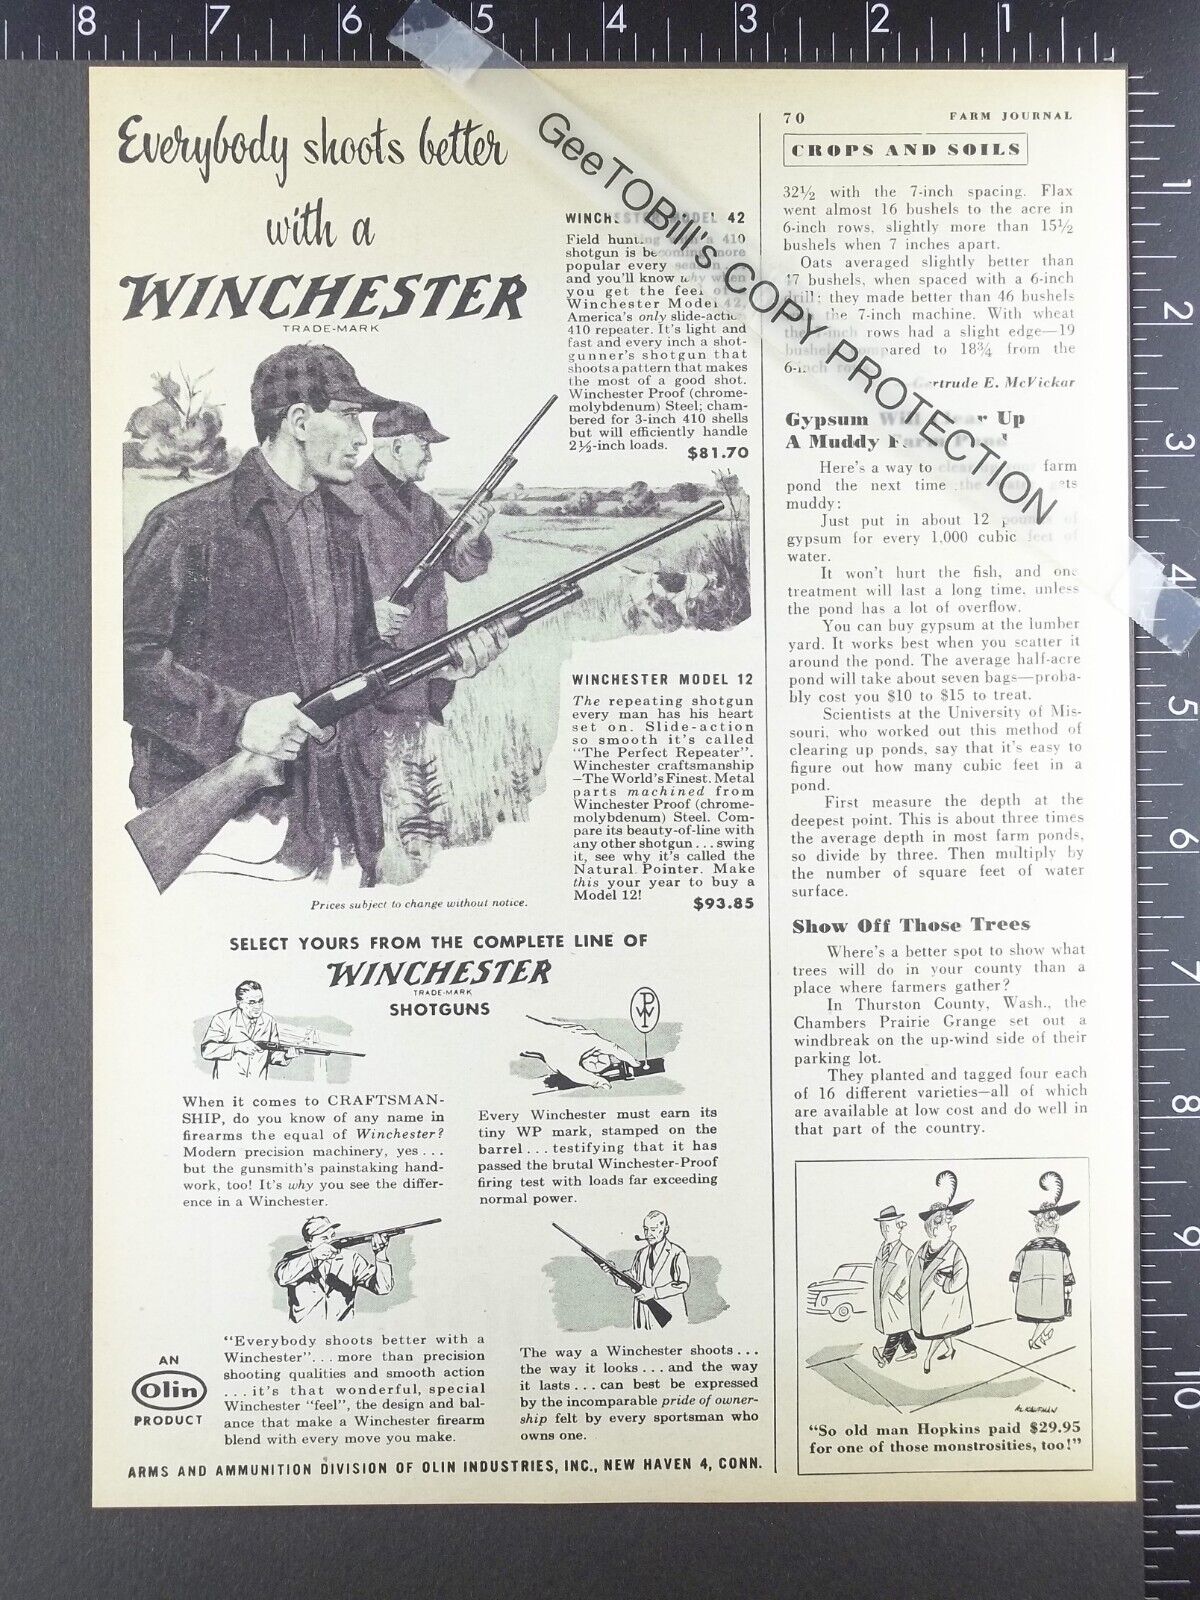 1953 ADVERTISING for Winchester model 42 12 shotguns